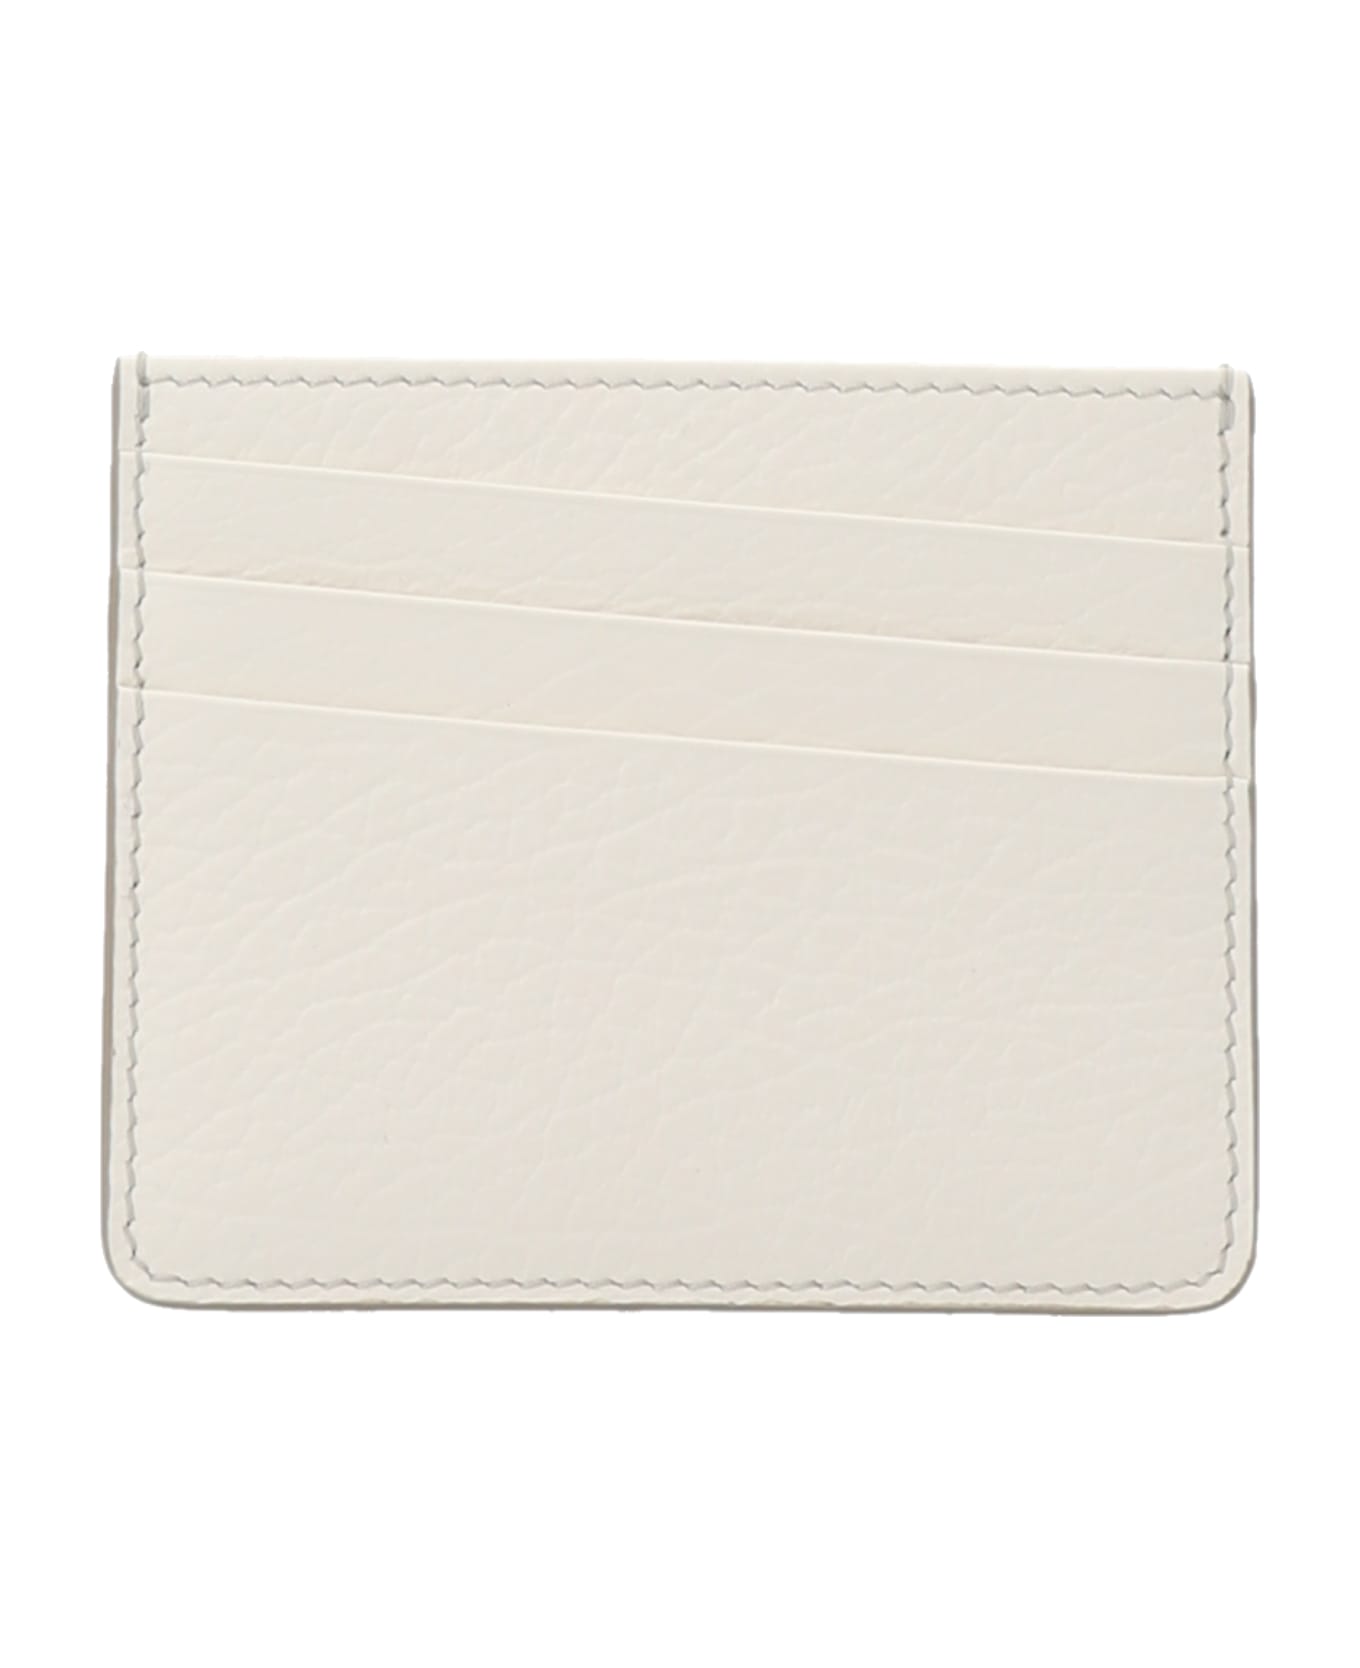 Maison Margiela 'stitching' Card Holder - White